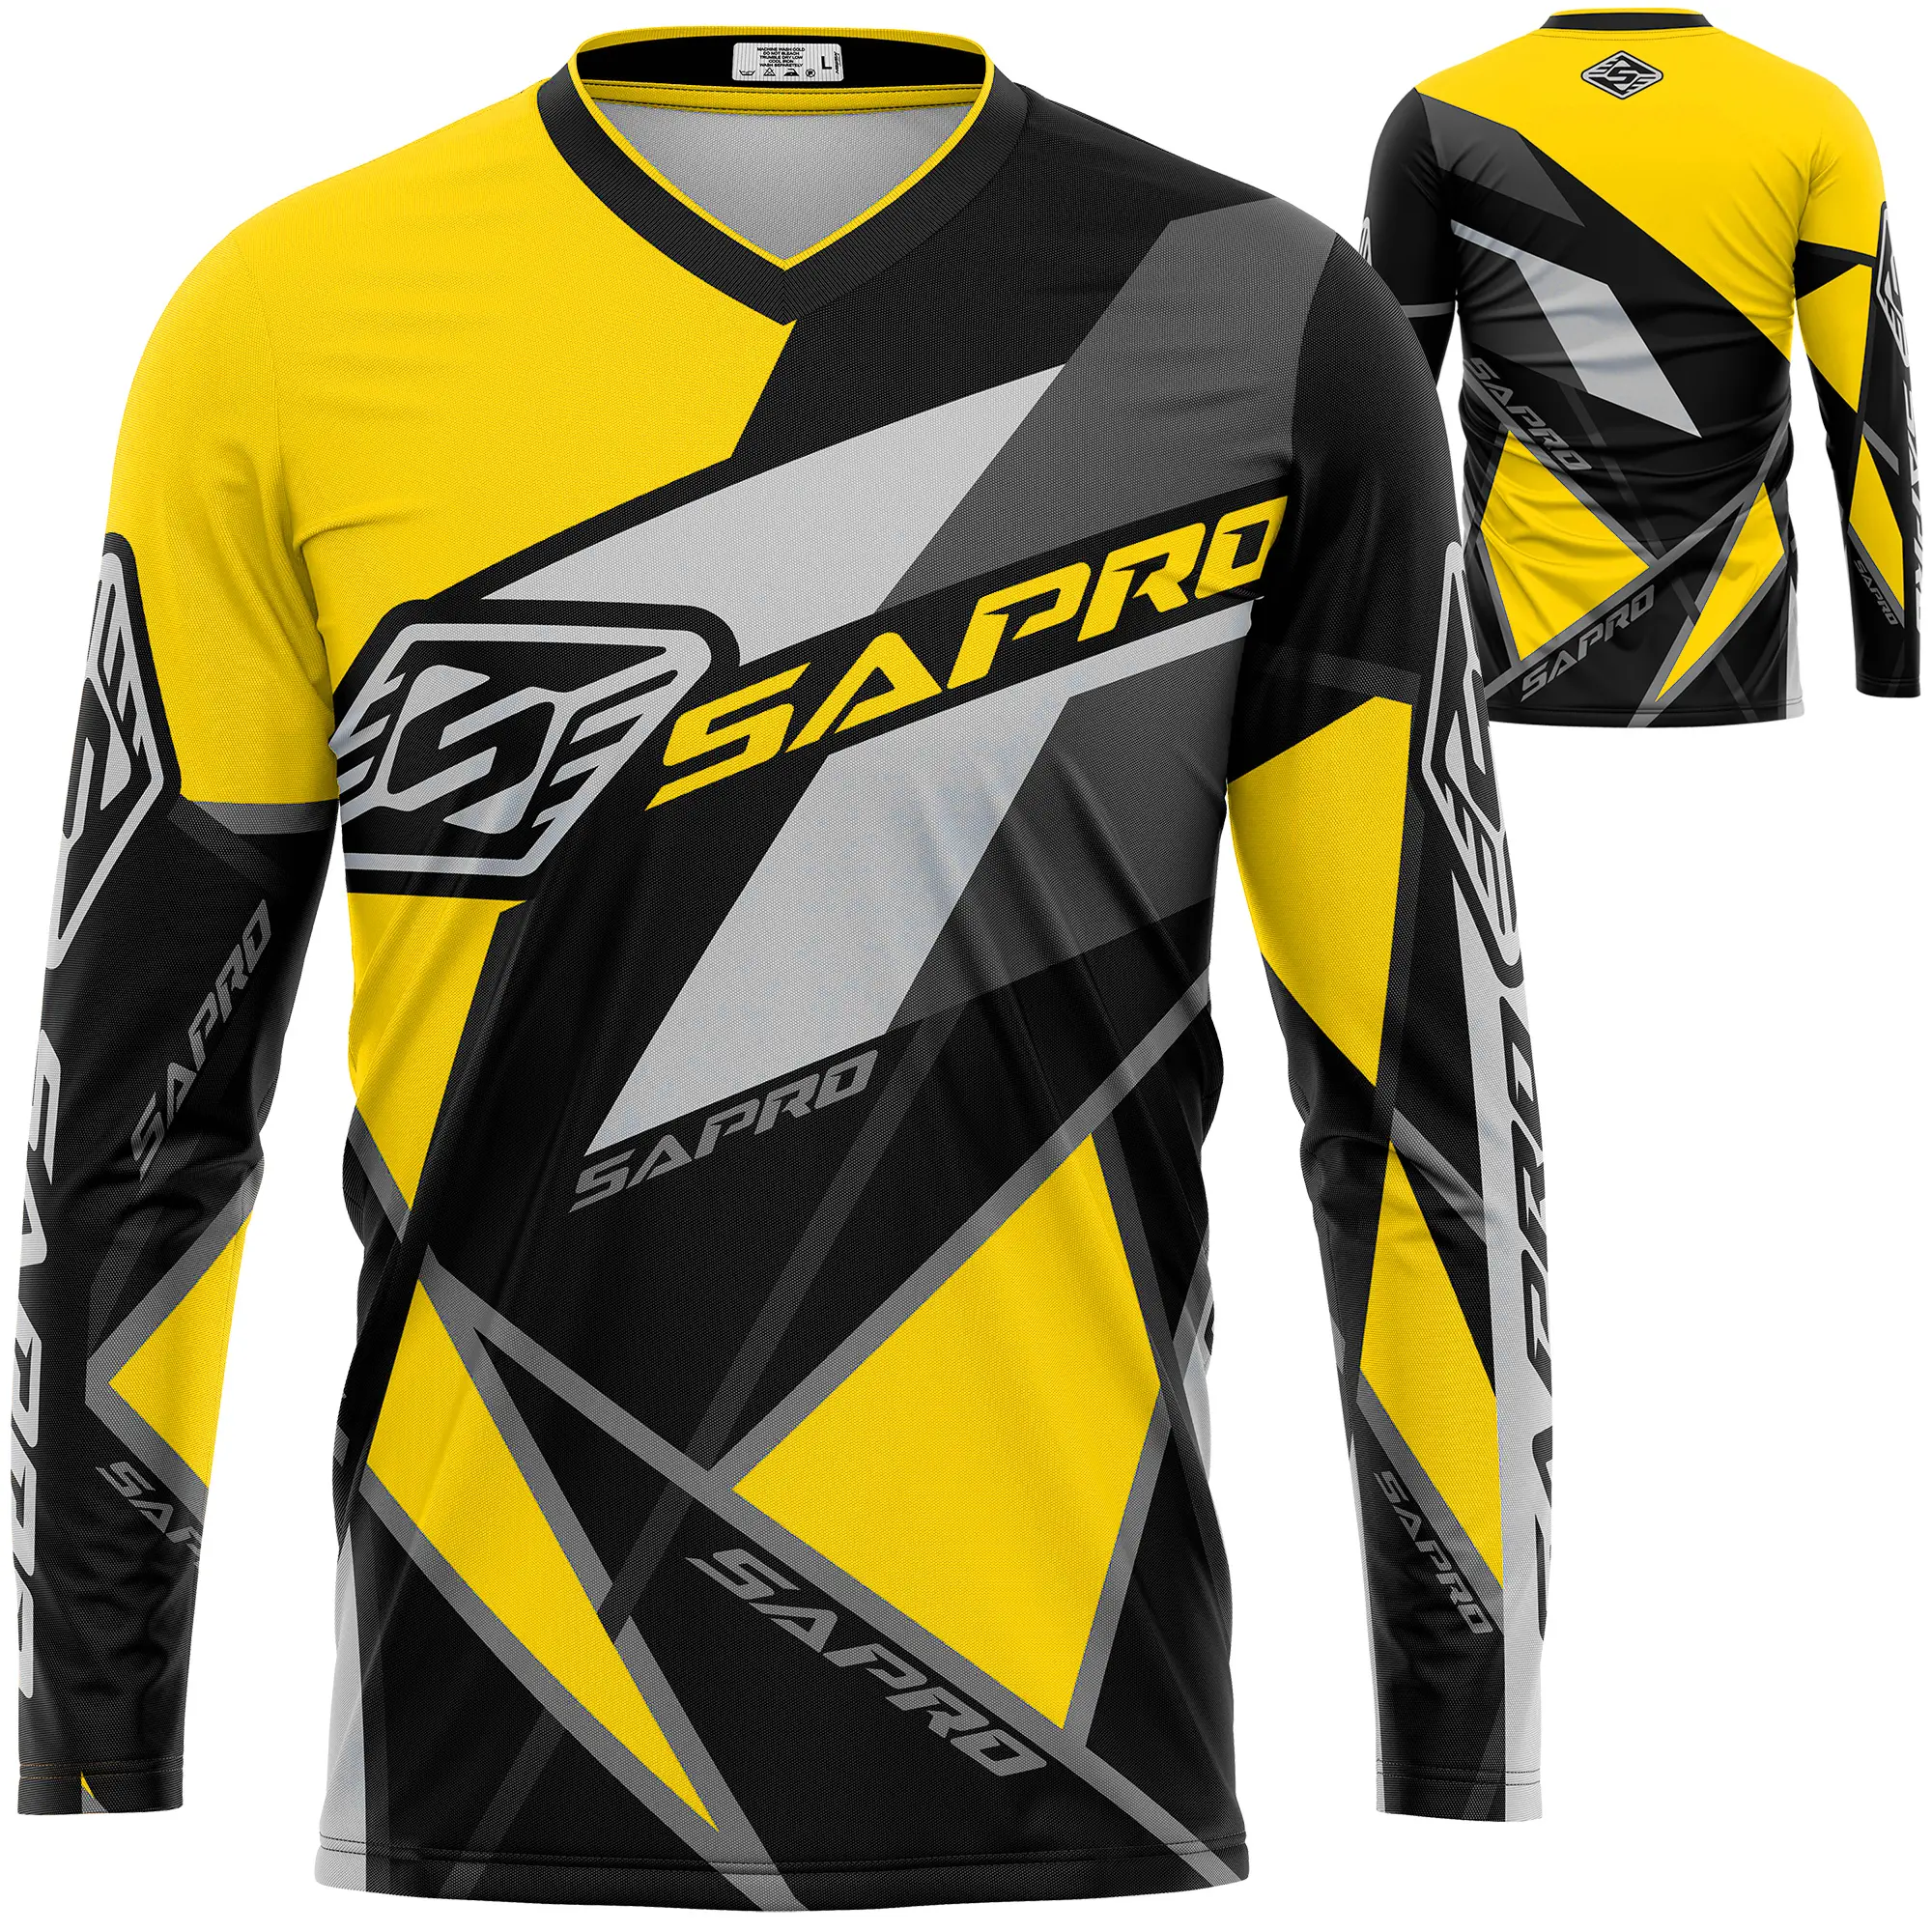 Camisa de motocross de alta qualidade, feita de 100% poliéster, micro tecido de malha, com nunca se aglomerando, processo de subolmação de cores, design personalizado